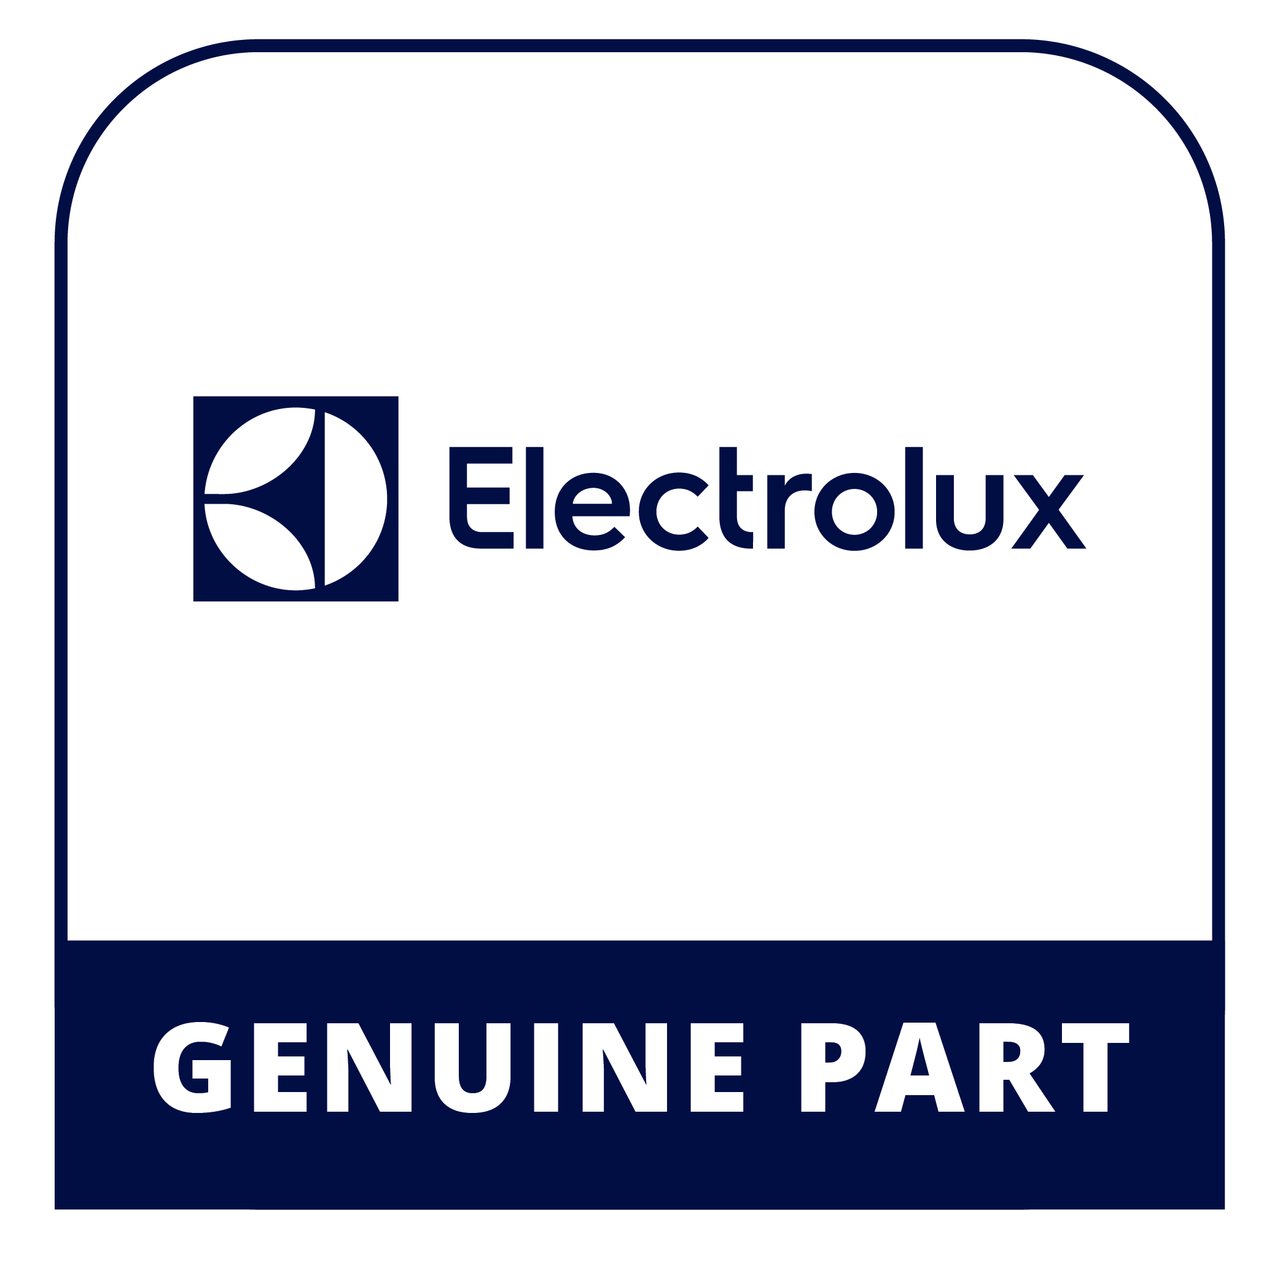 Frigidaire - Electrolux 318191024 Switch - Genuine Electrolux Part